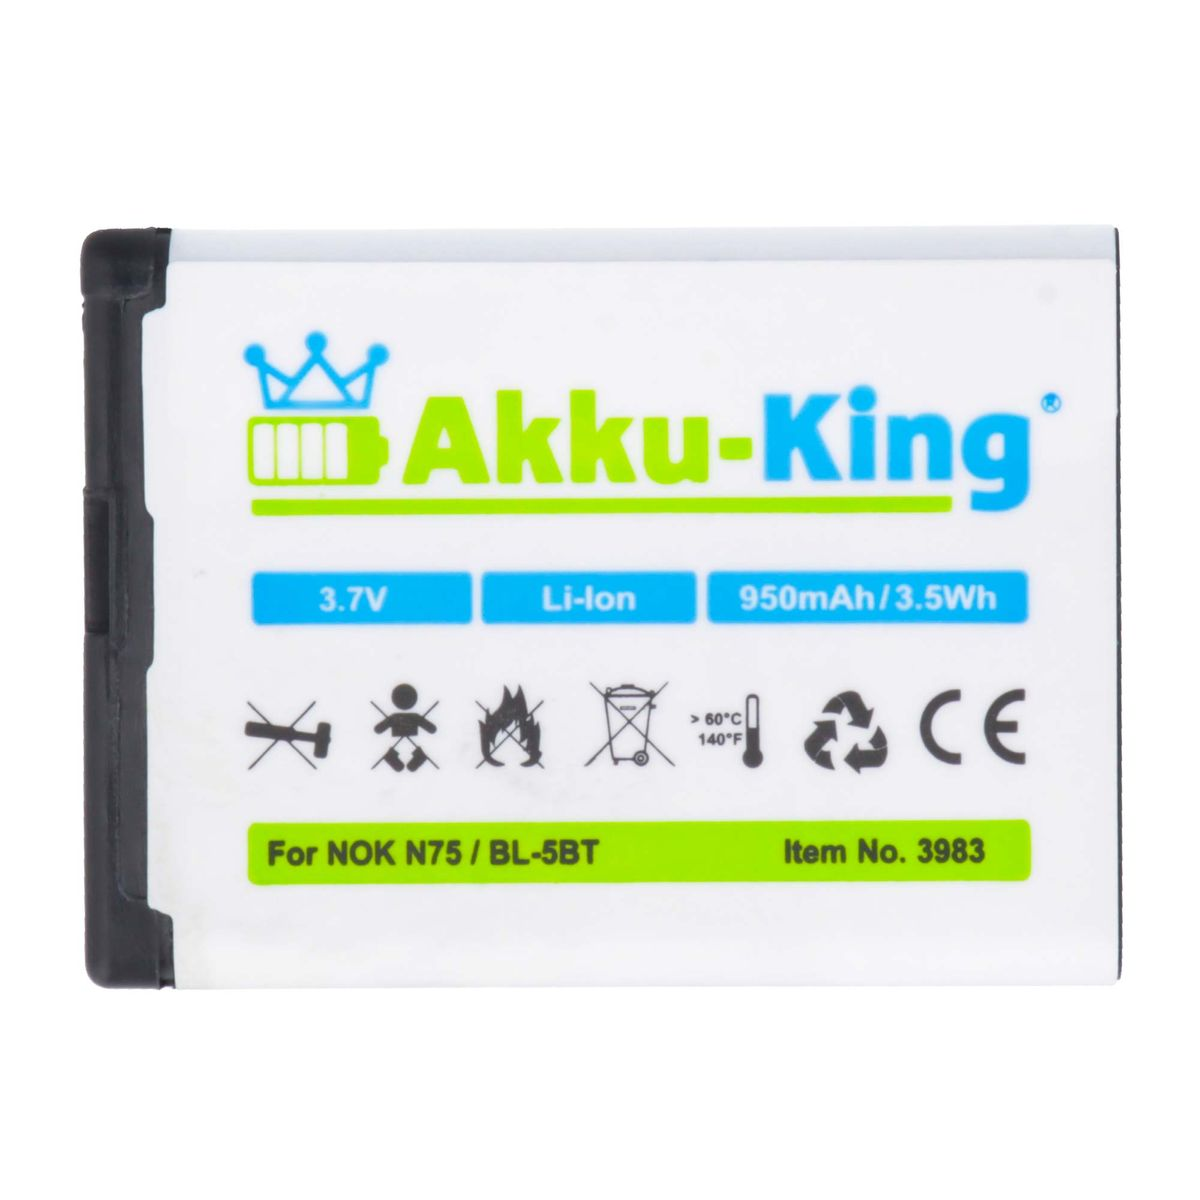 AKKU-KING Akku kompatibel Volt, 950mAh 3.7 BL-5BT mit Nokia Li-Ion Handy-Akku